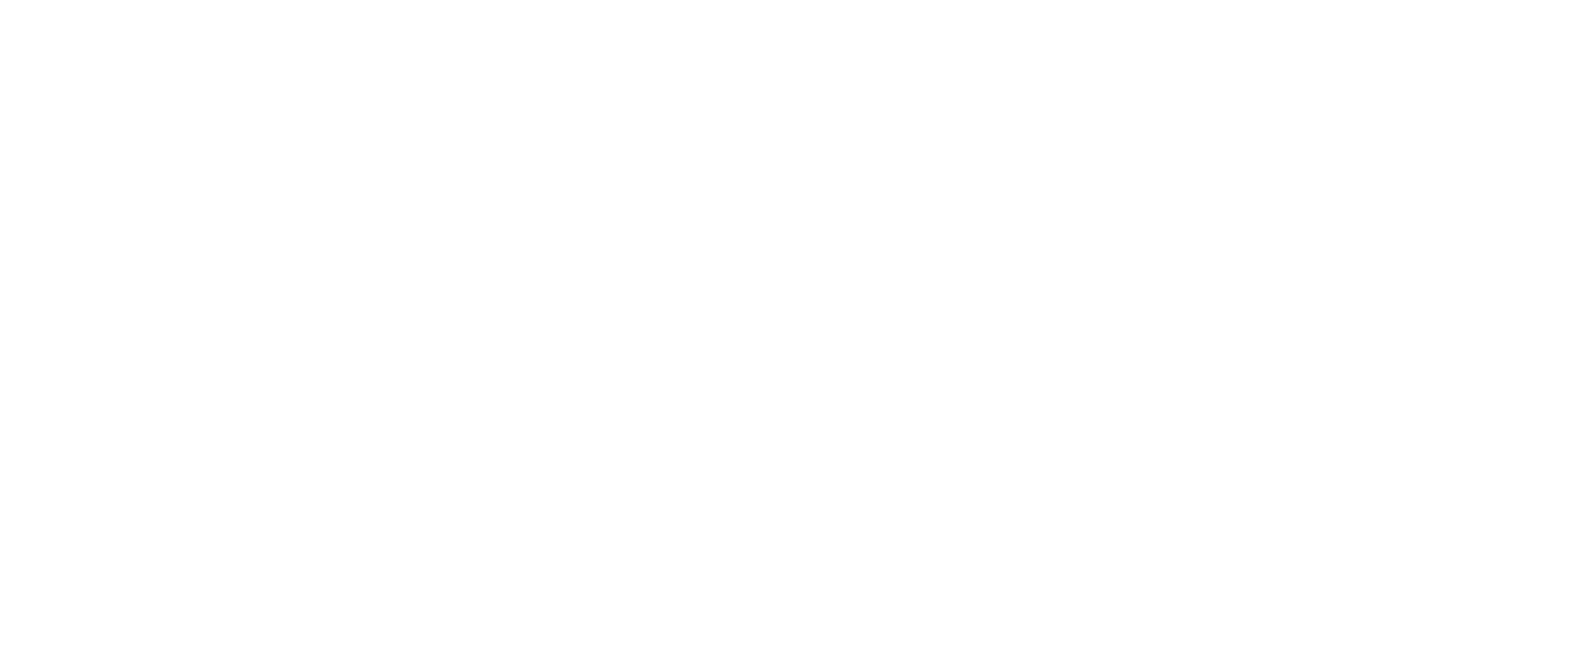 carlsbad strawberry company footer logo